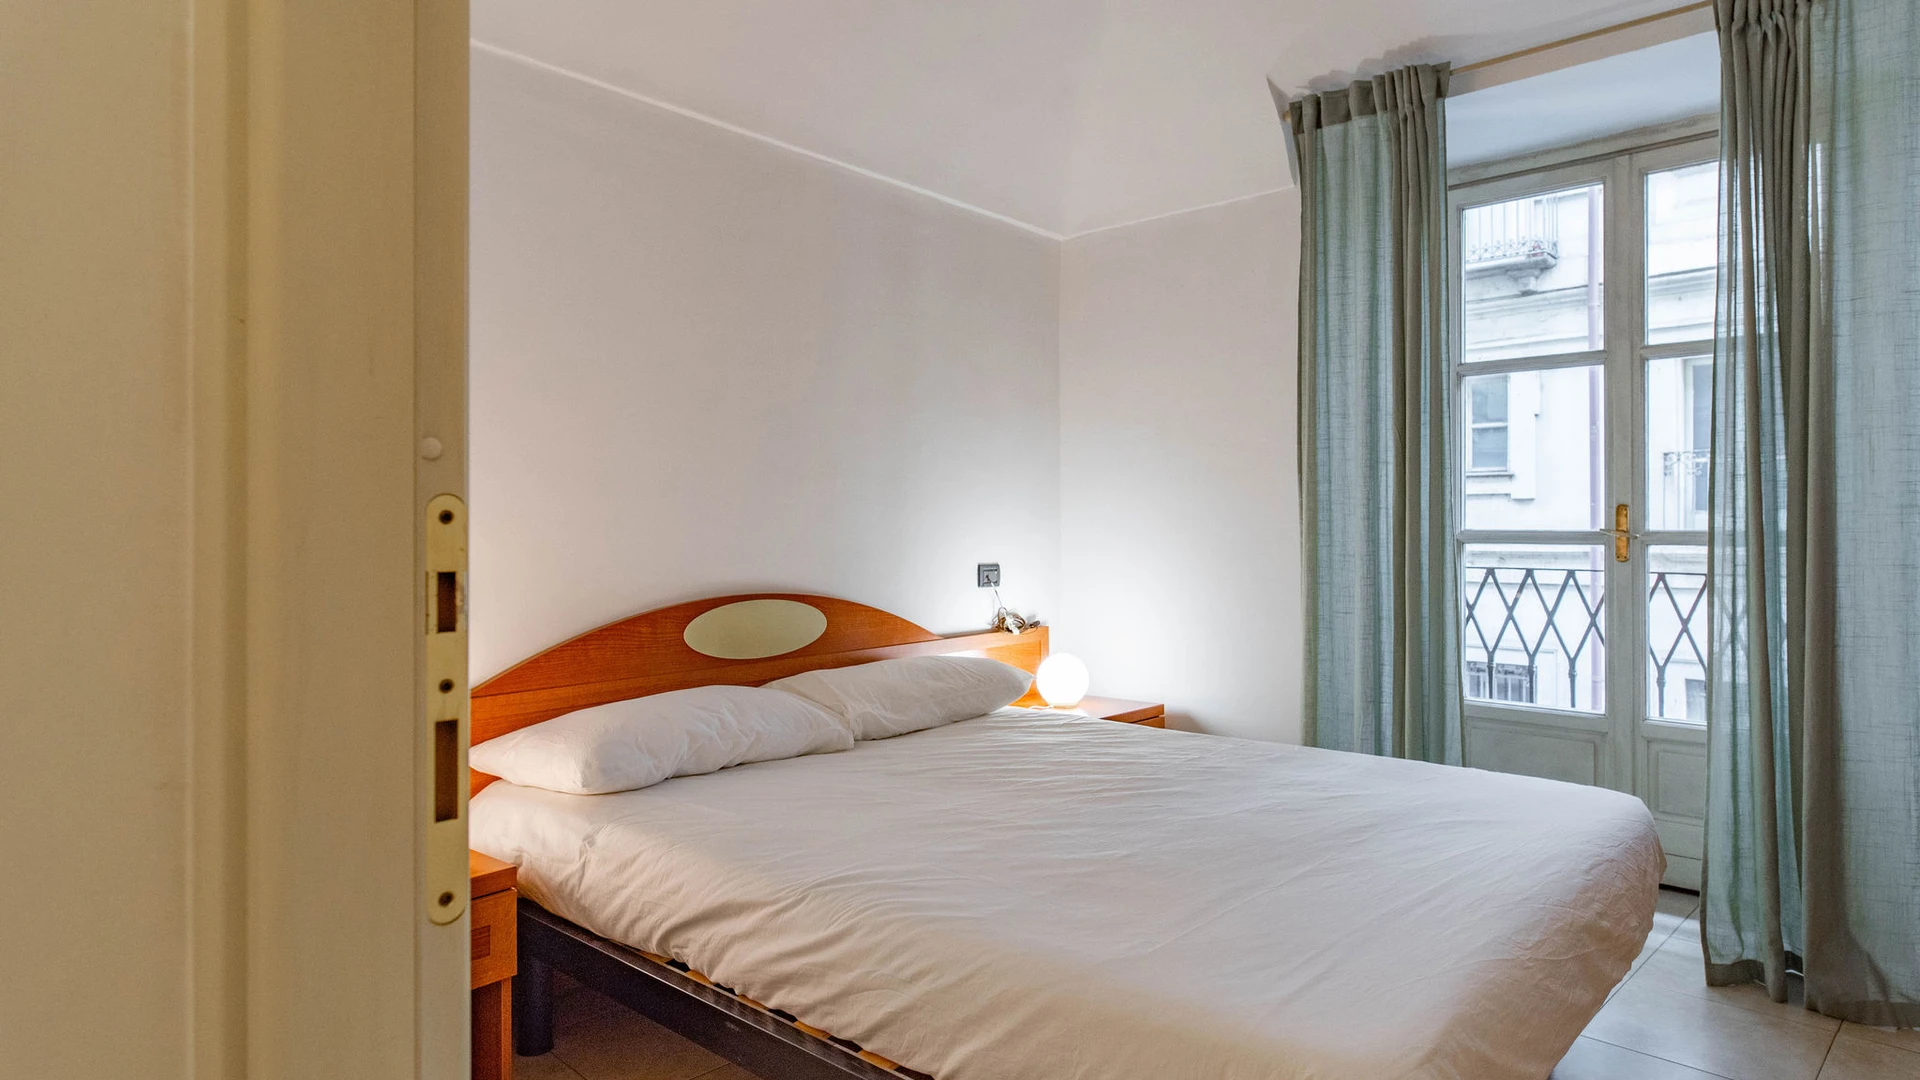 Torino içinde 2 yatak odalı konaklama